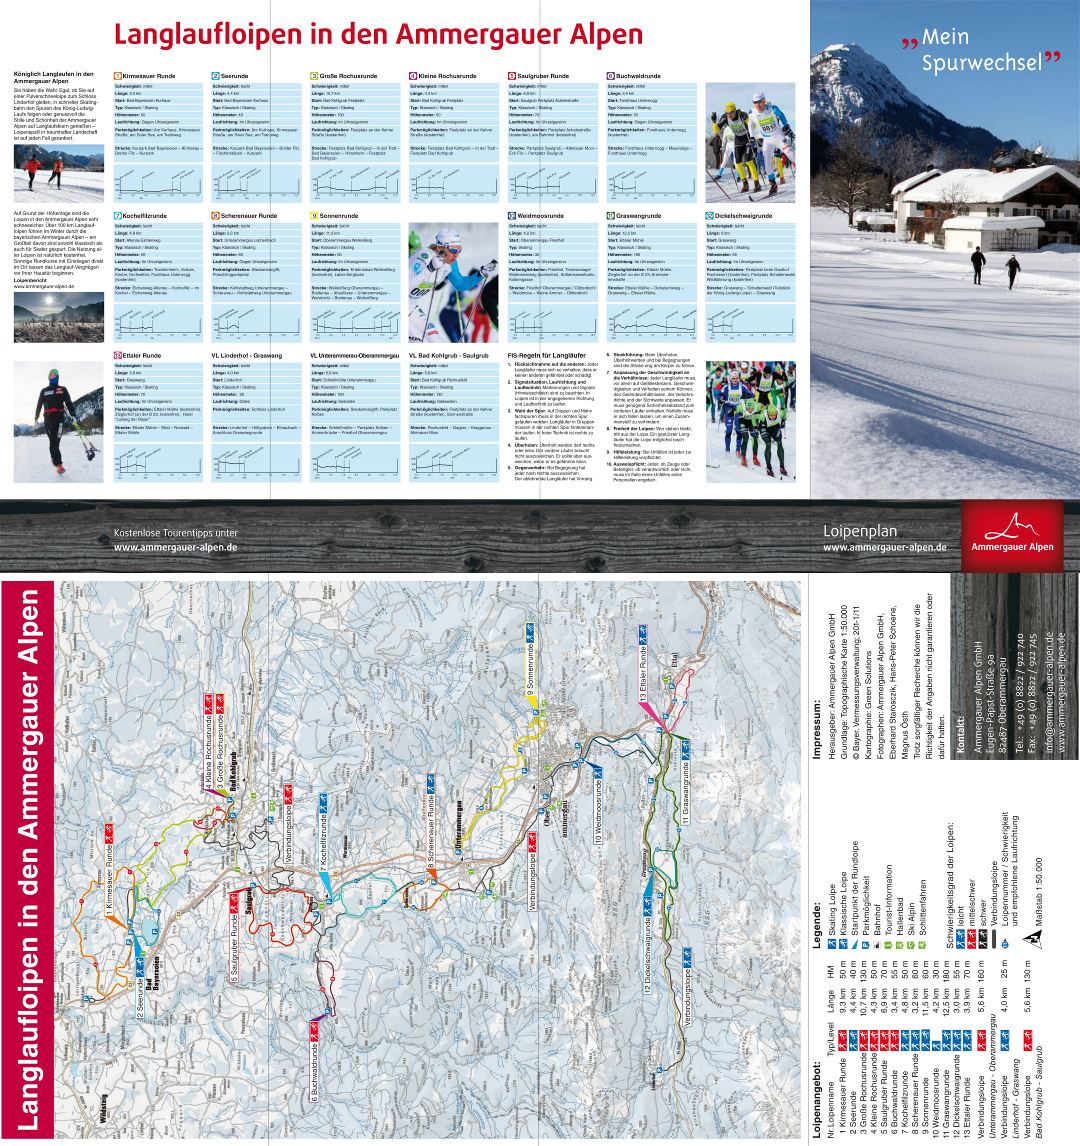 Large detailed piste map of Ammergauer Alpen, Langlaufloipen Ski Resort - 2012